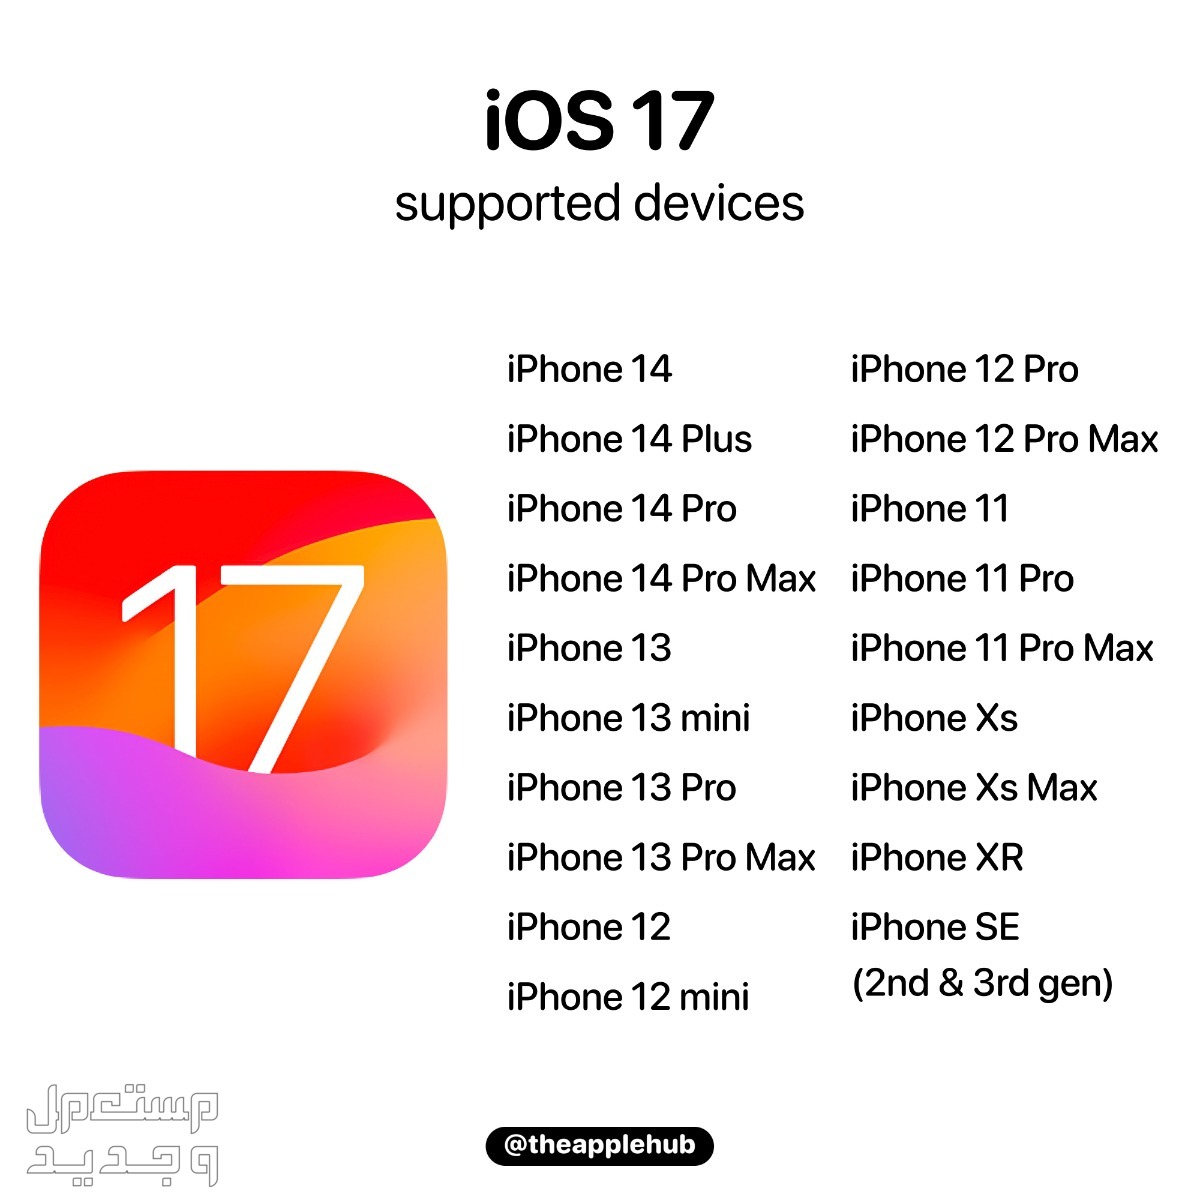 نظام iOS 17 لهواتف ايفون بمميزات جديدة تعرف عليها في العراق